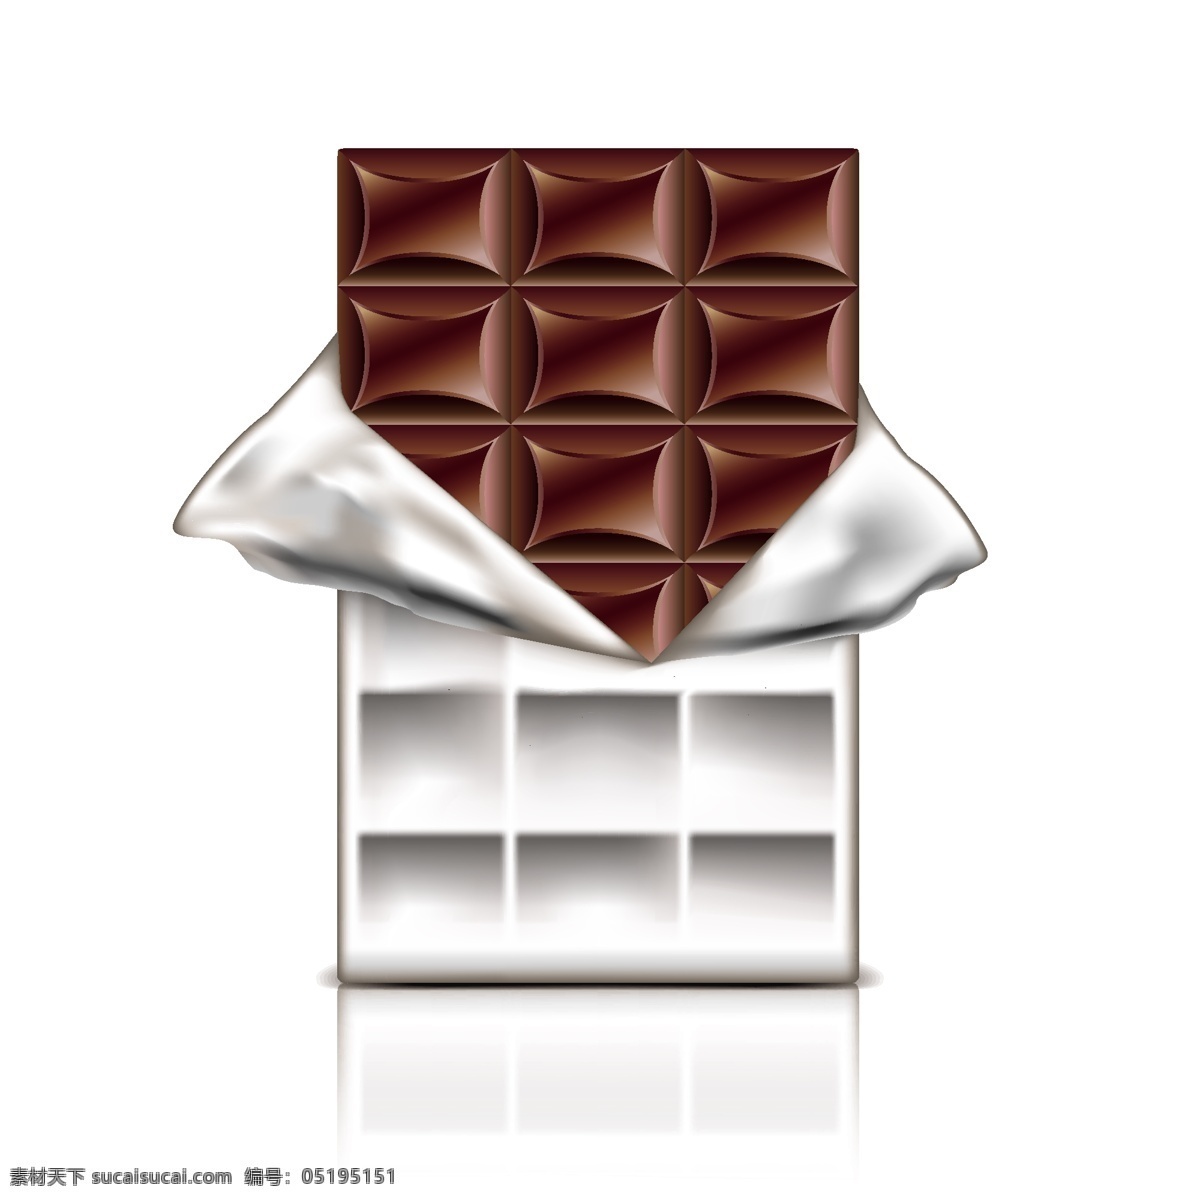 撕开 巧克力 包装 巧克力包装 甜品 食物 零食 餐饮美食 生活百科 矢量素材 白色